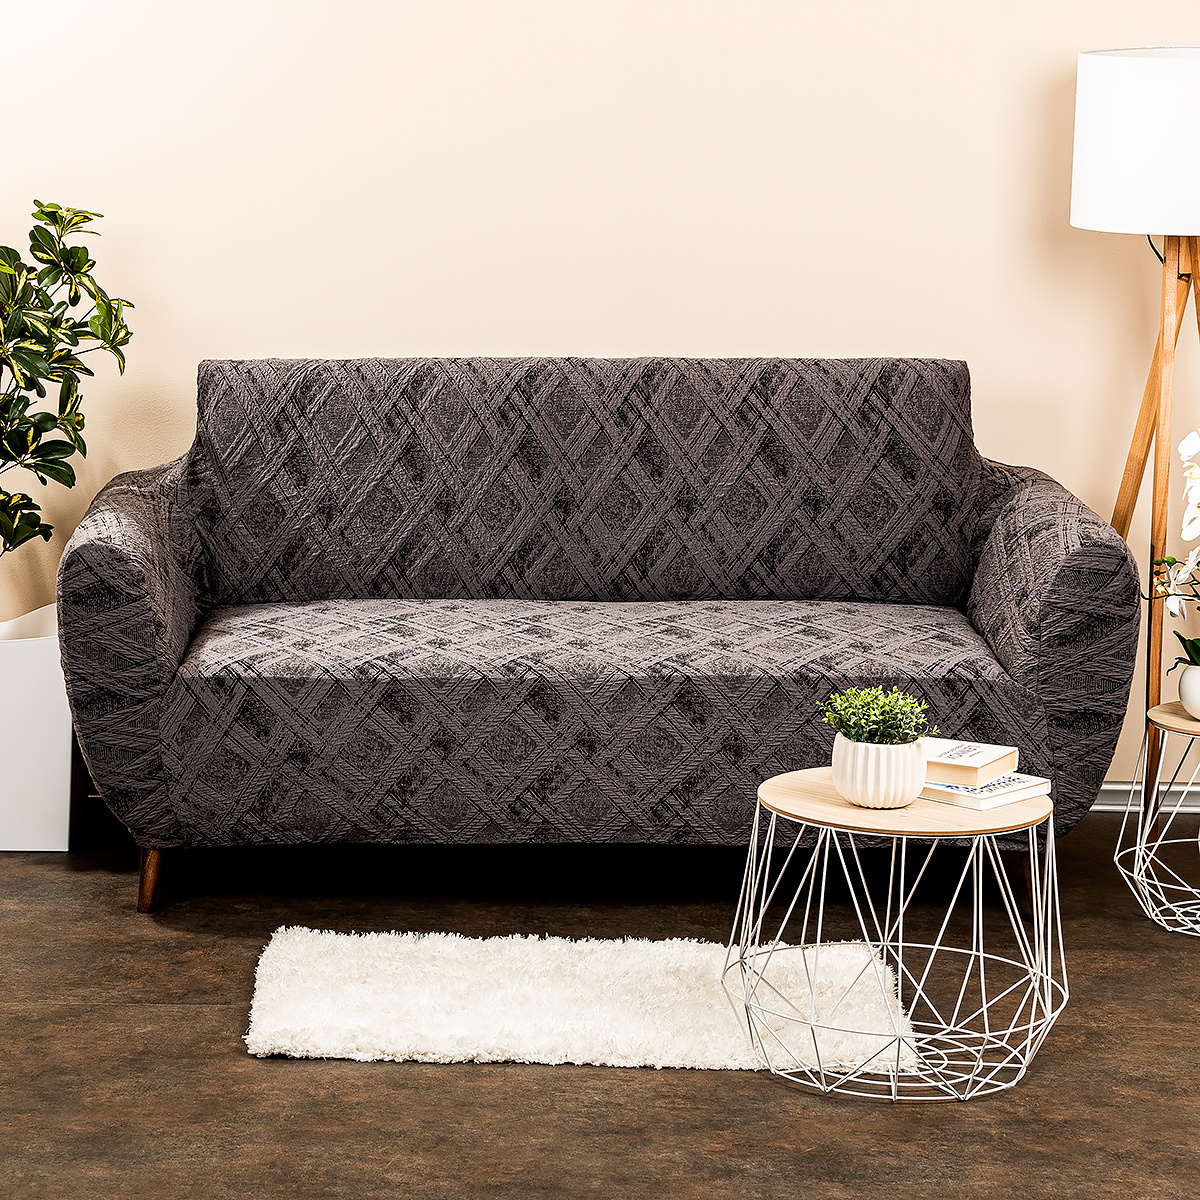 Husa multielastica 4Home Comfort Plus pentru canapea, gri, 140 - 180 cm